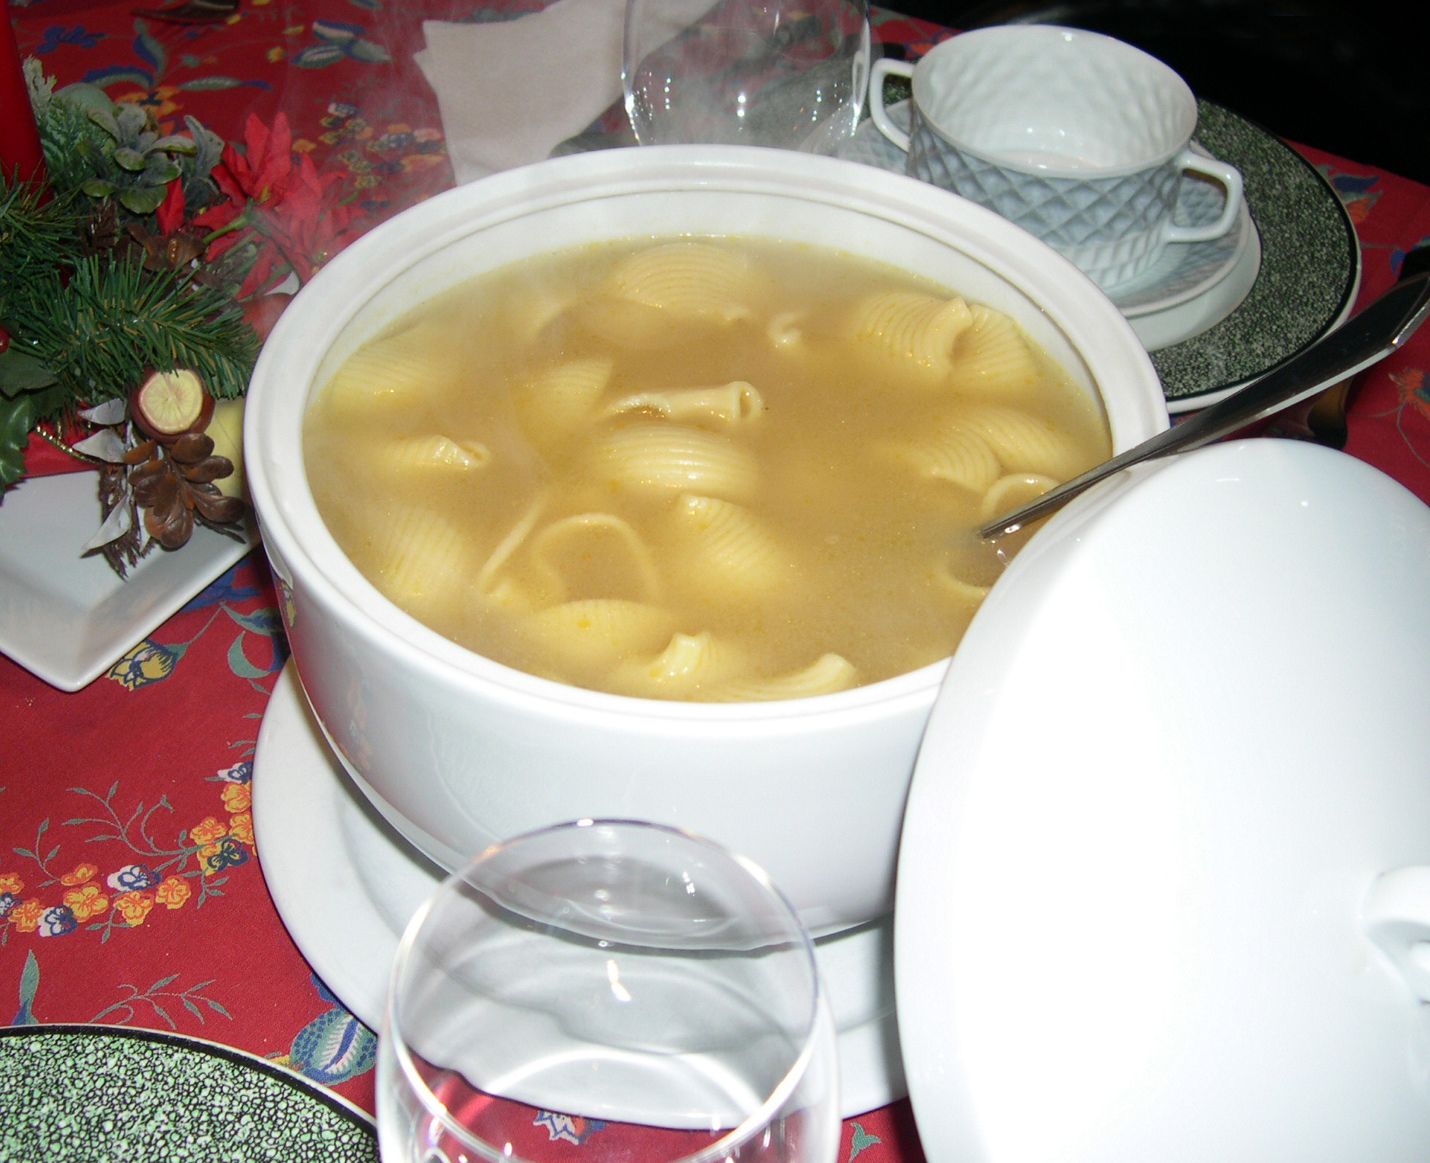 L'escudella, un dels plats típics del Nadal. Foto Viquipèdia.